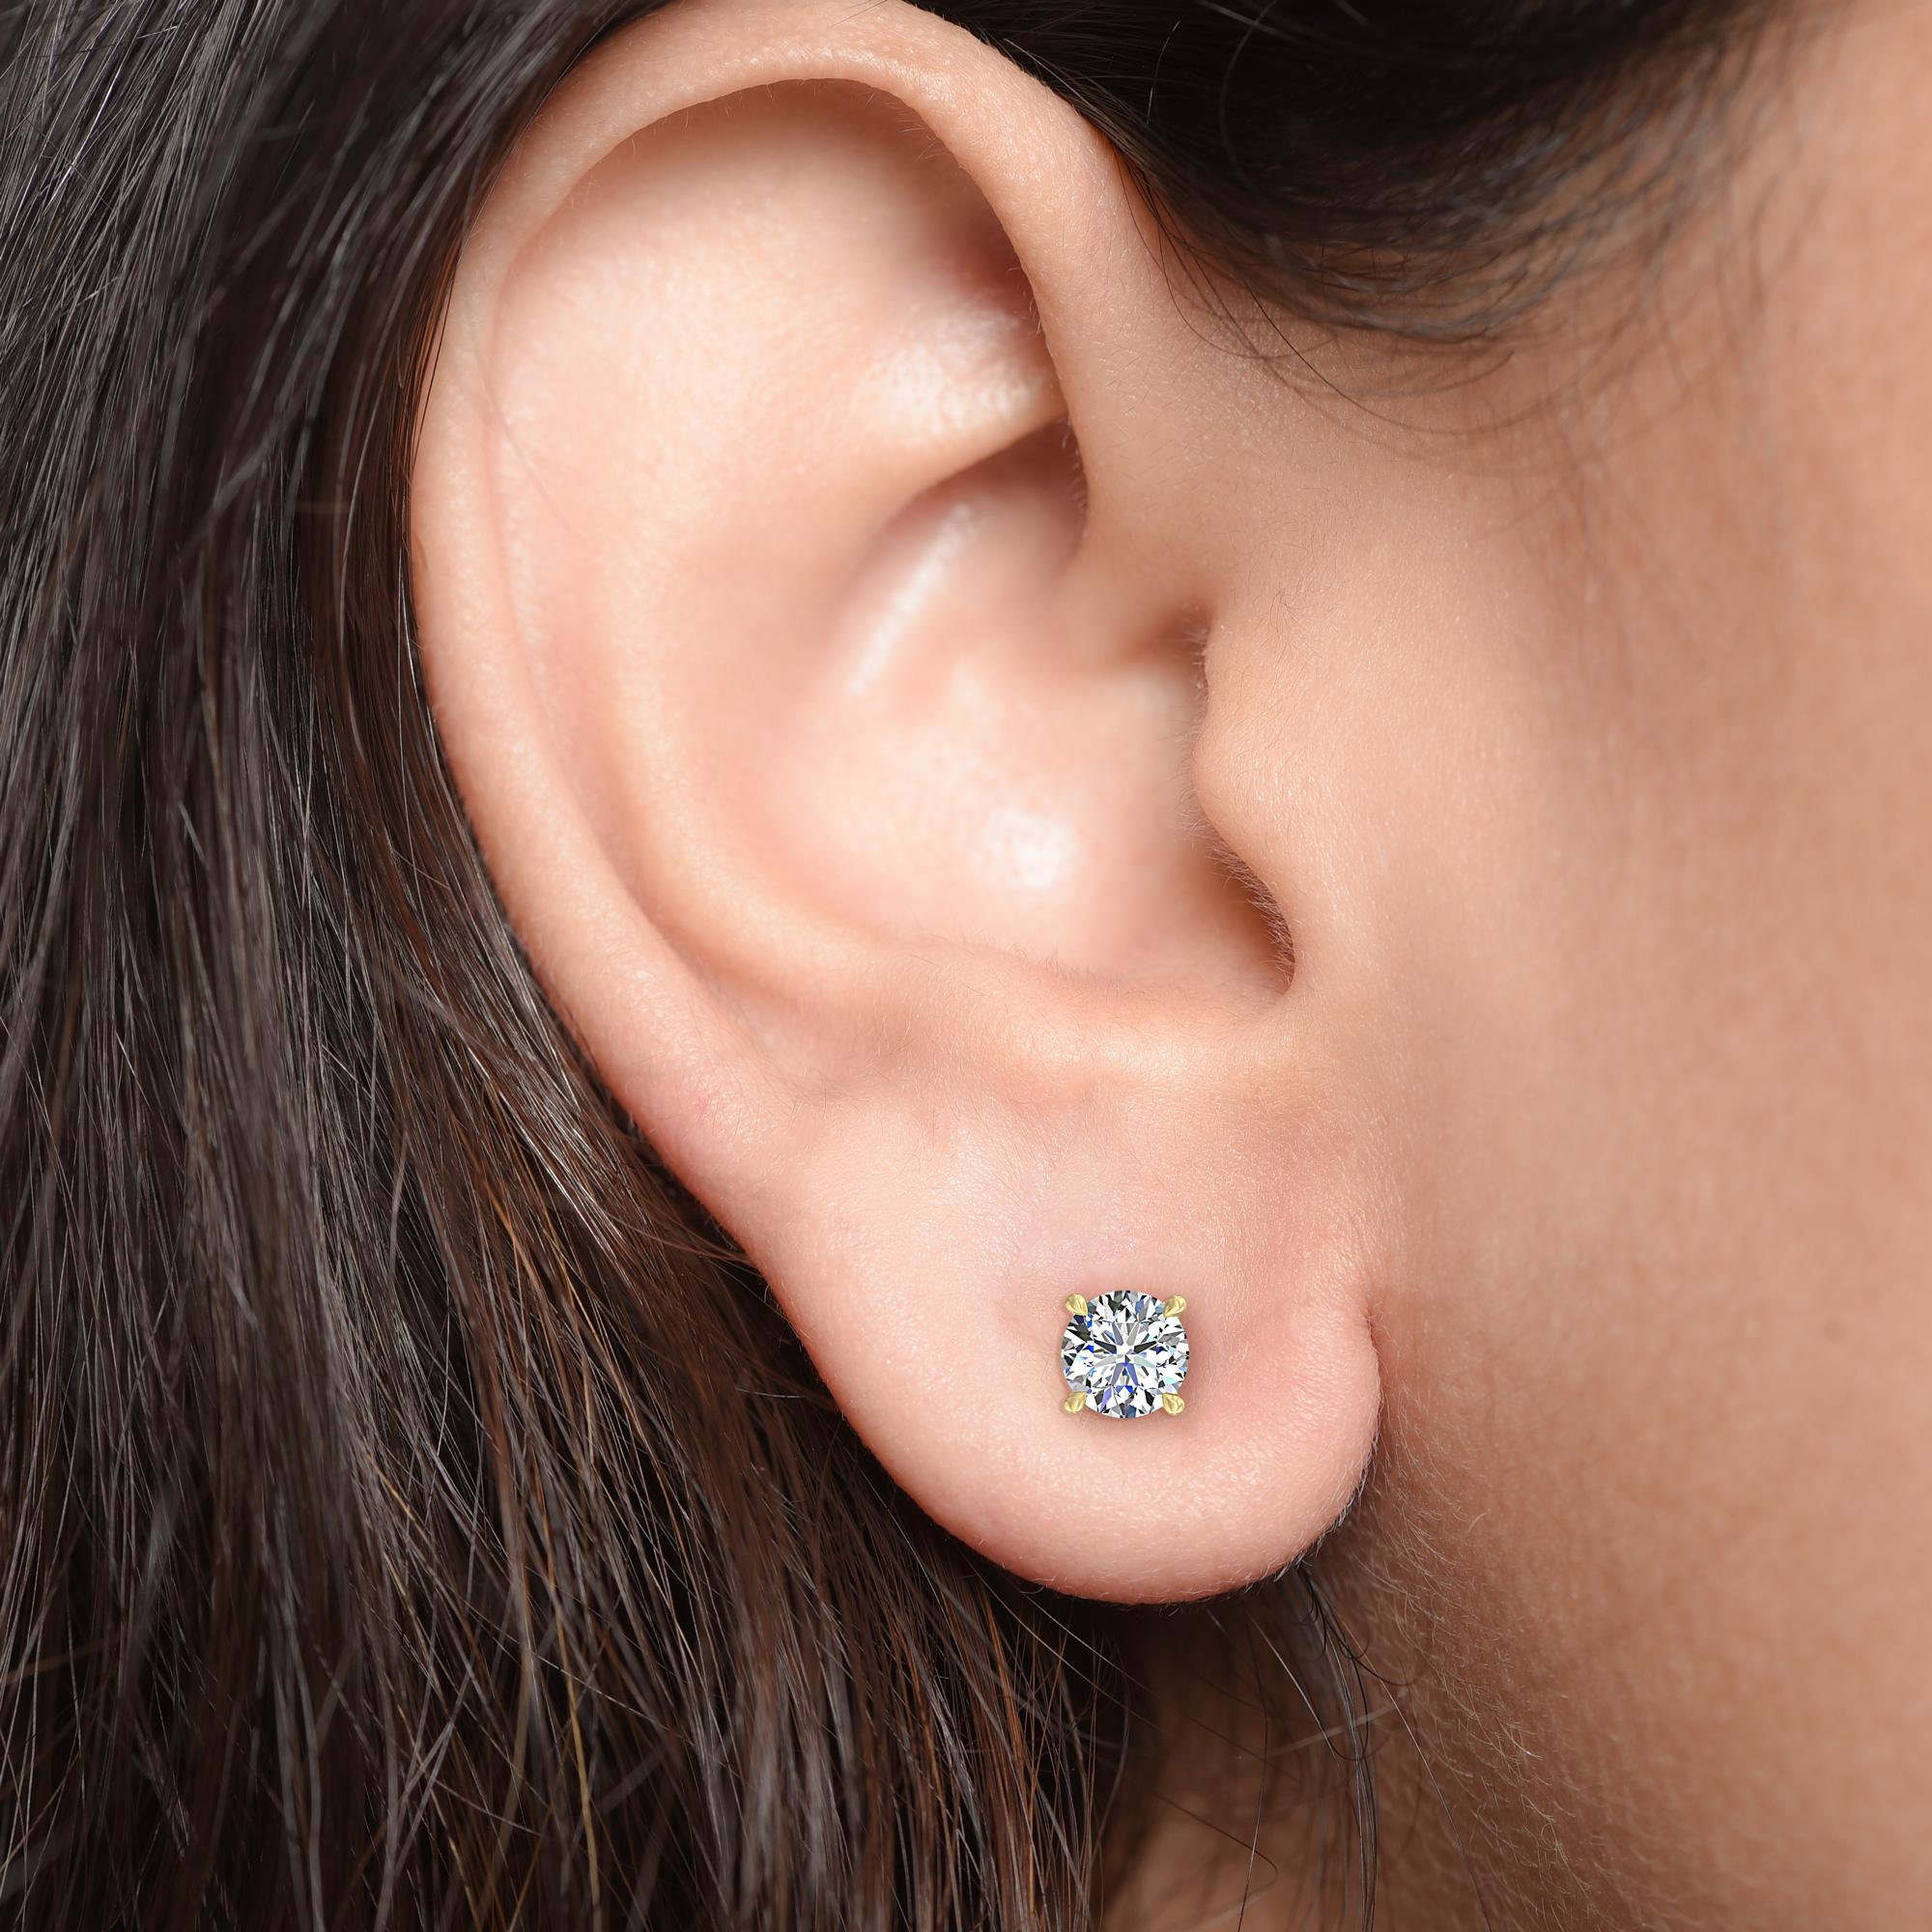 Diese klassischen GIA-zertifizierten Diamantohrstecker präsentieren ein Paar perfekt aufeinander abgestimmter Diamanten mit einem Gesamtgewicht von 0,75 Karat. Die aus 18-karätigem Gelbgold gefertigten vierzackigen Ohrringe sind auch in Rosé- und